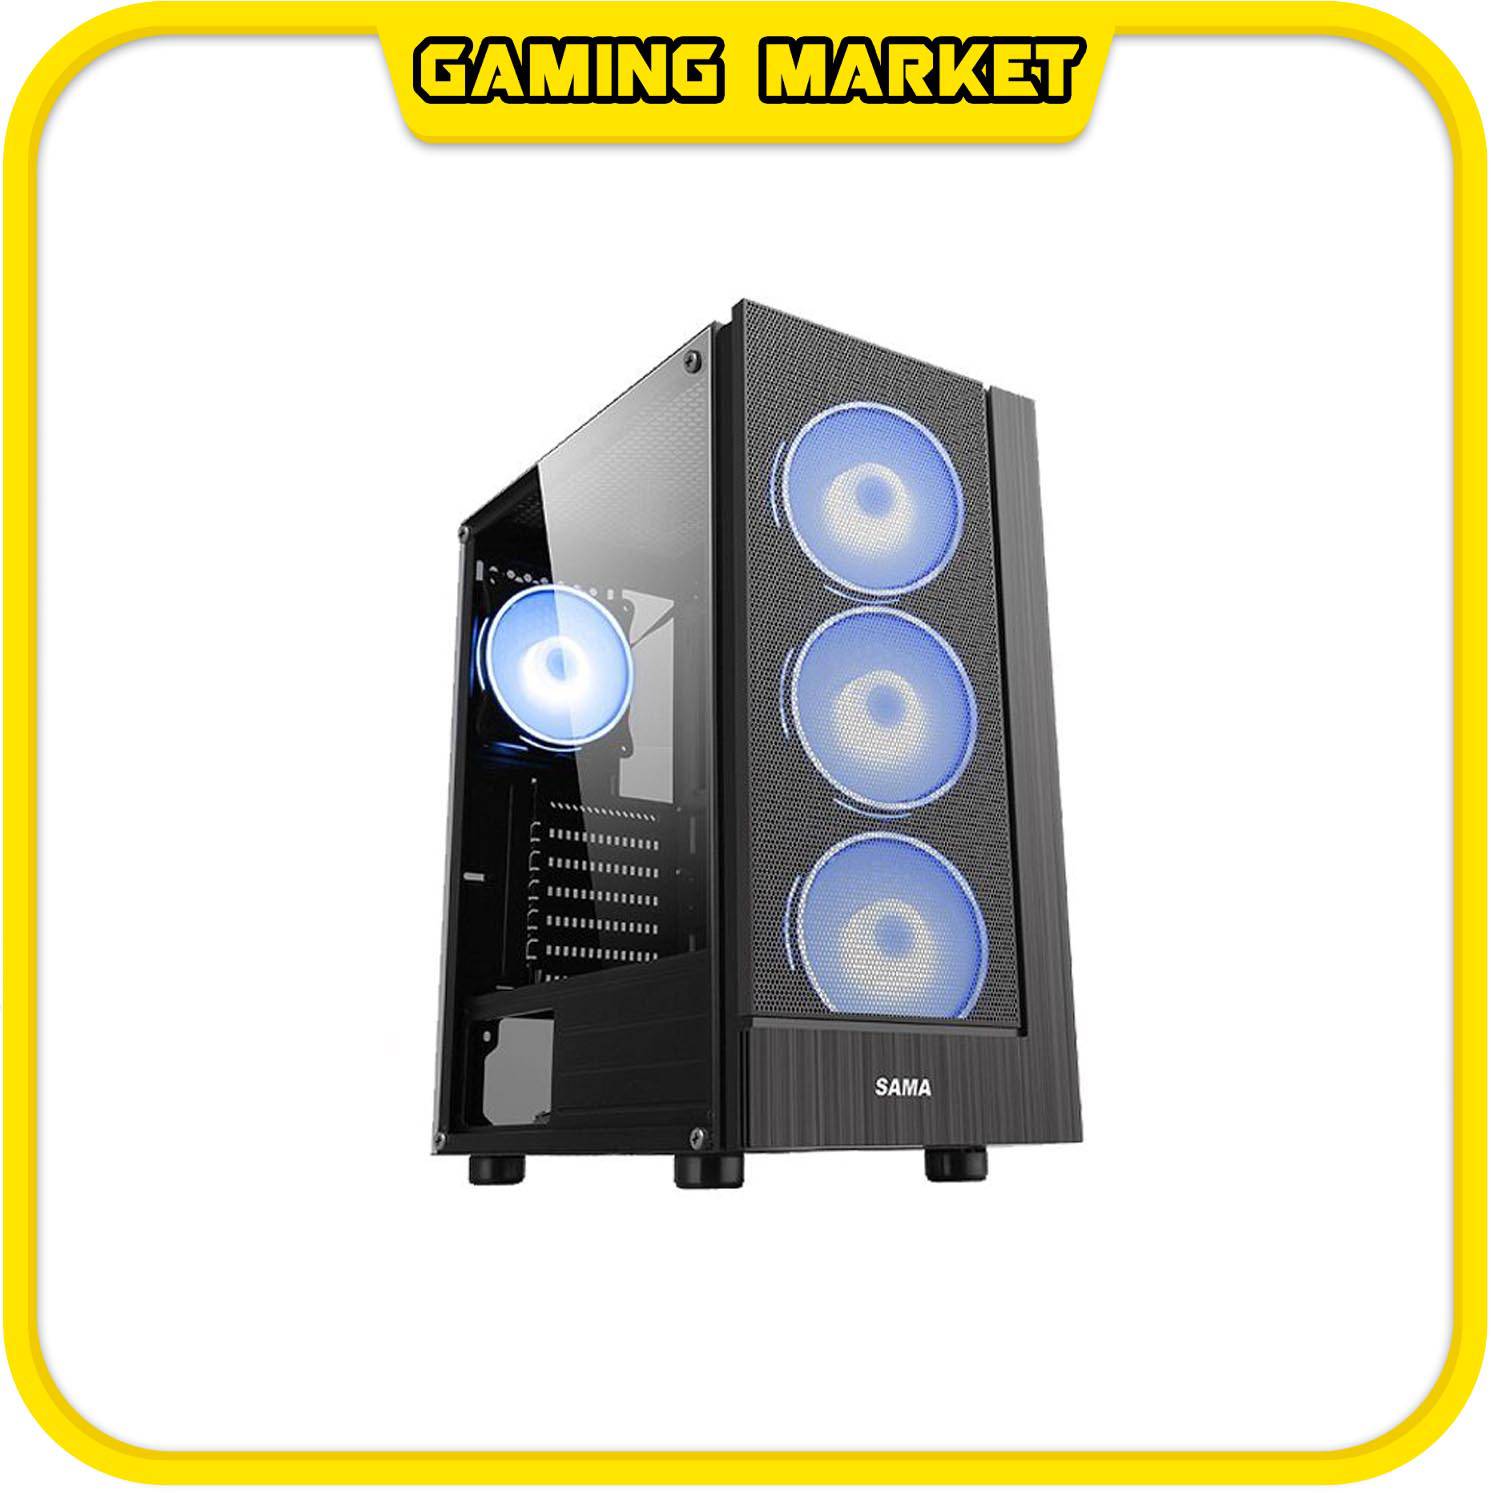 PC CHƠI GAME, ĐỒ HOẠ I3 10100F/RAM 8G/VGA INO3D 1660 6G